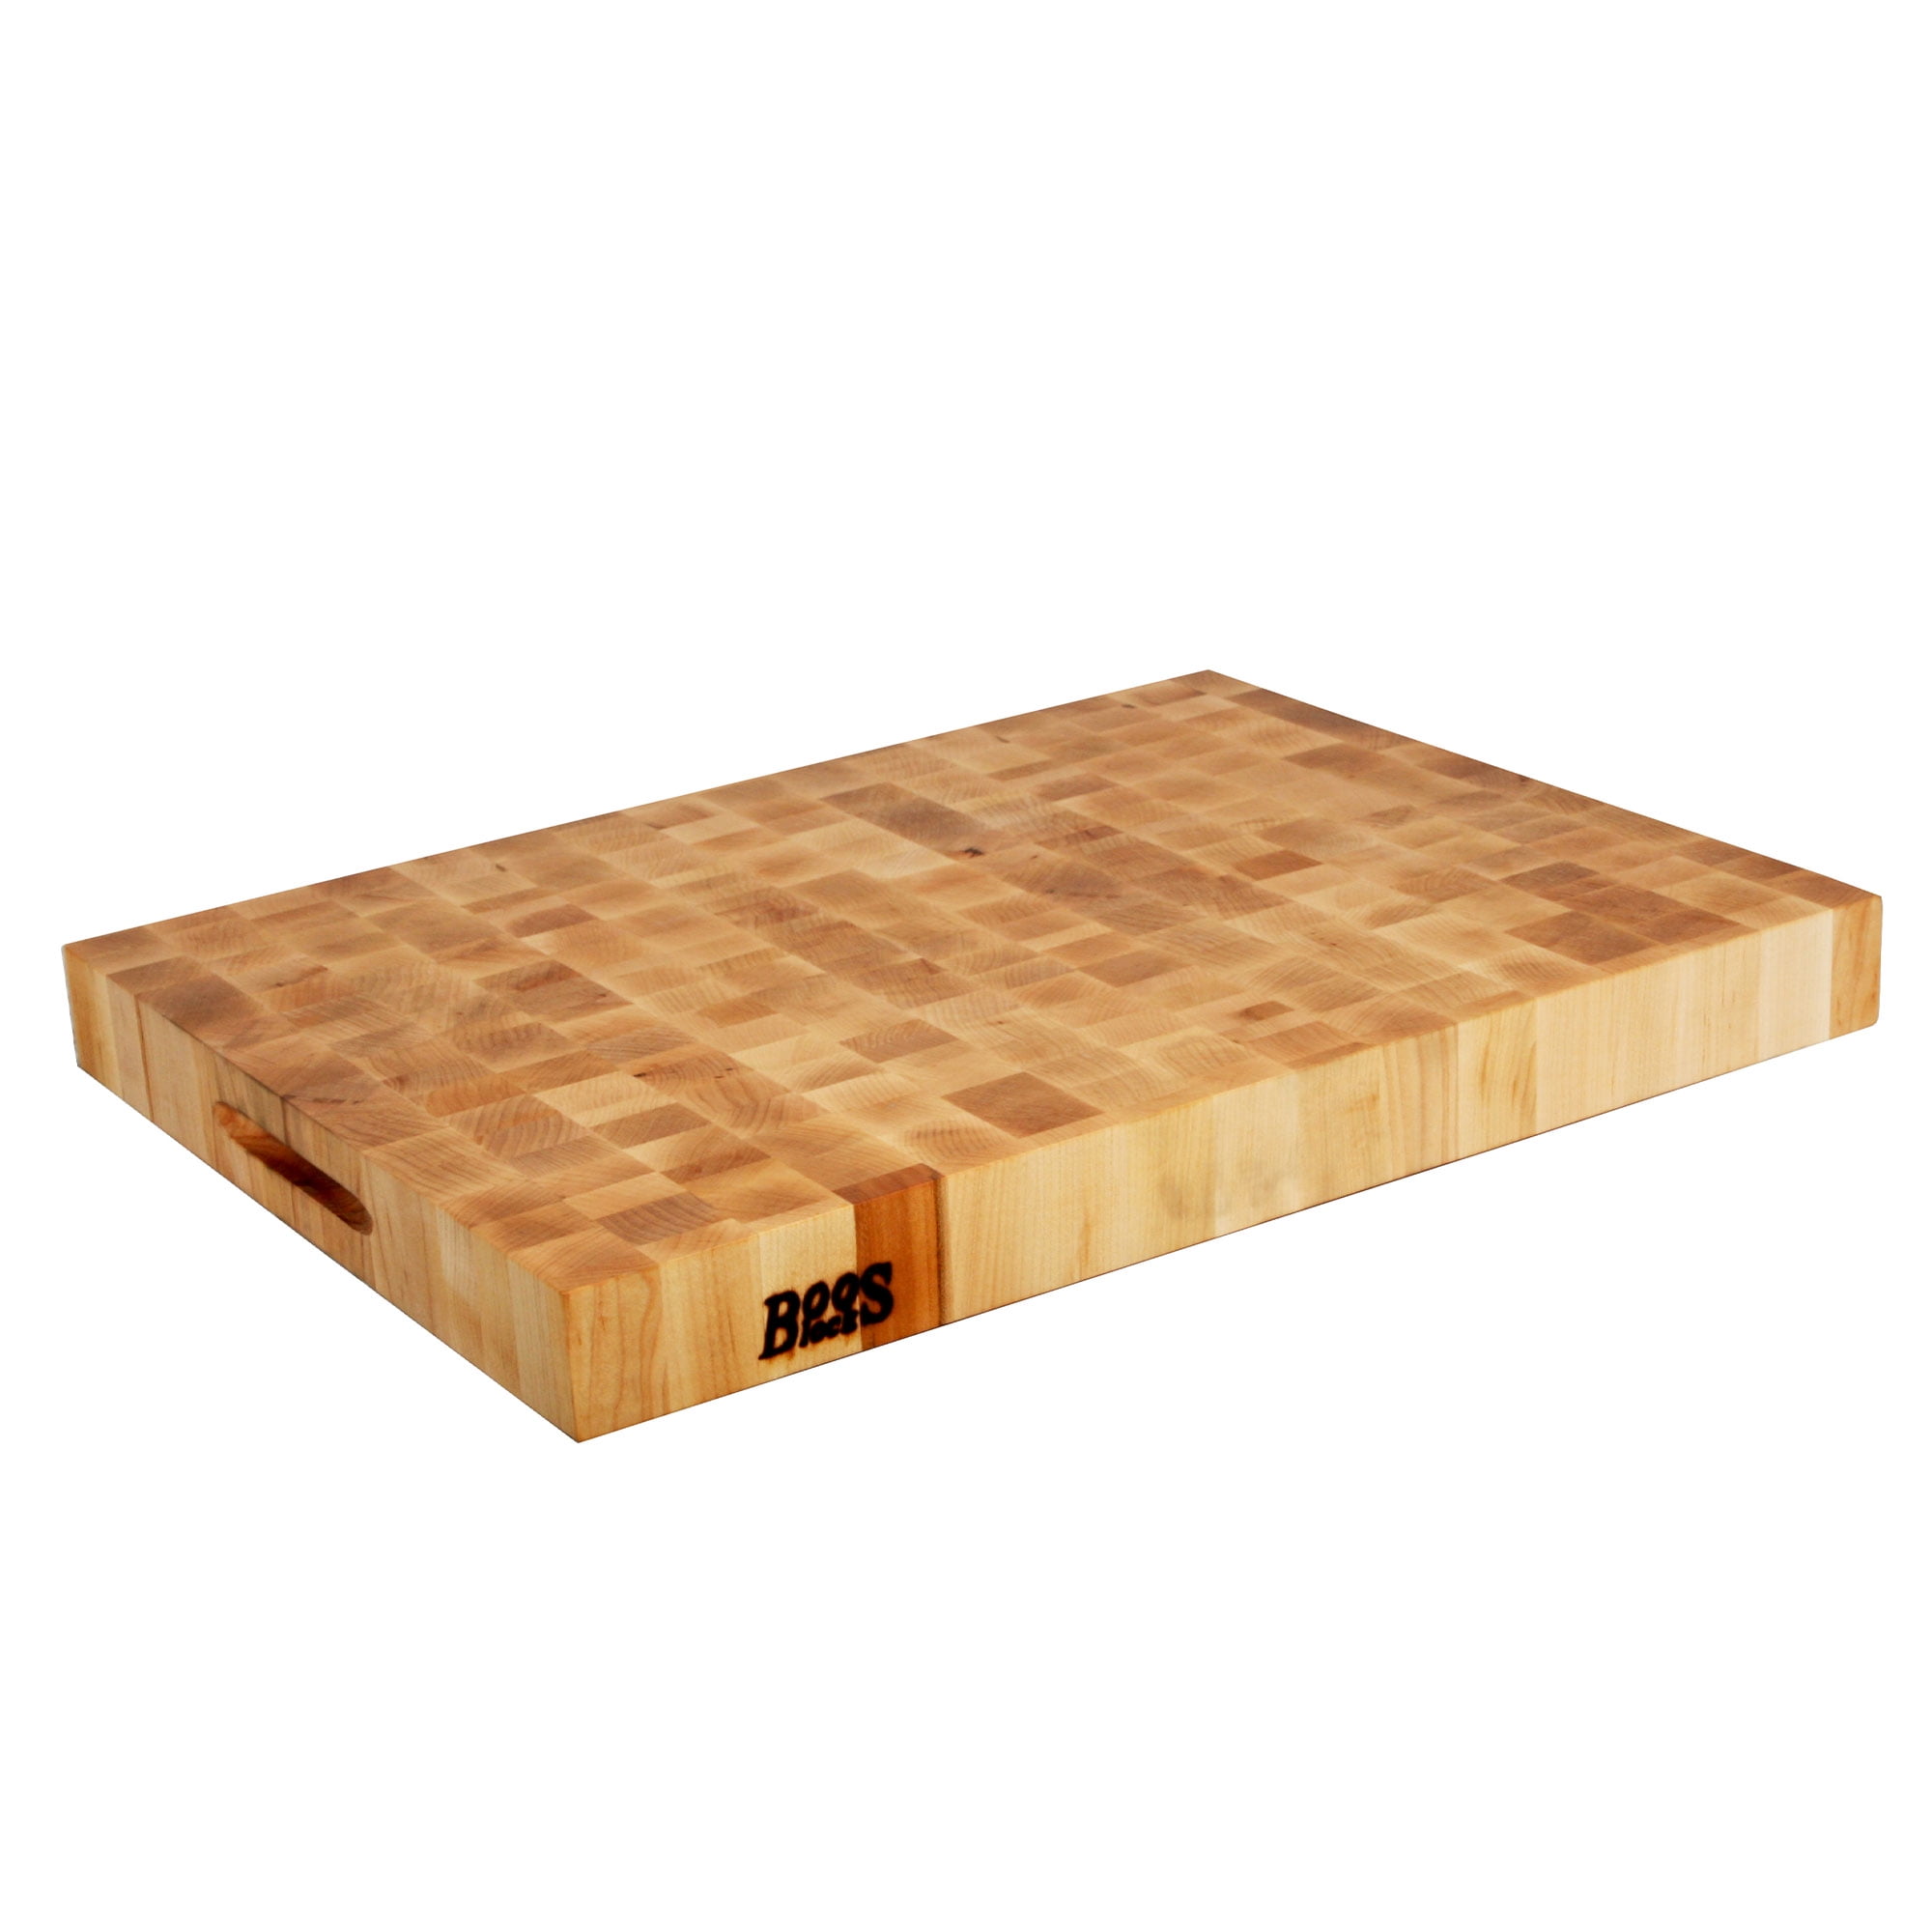 Boos End-Grain Maple Grazzi Table - 60 x 28 2.25 Thick Butcher Block